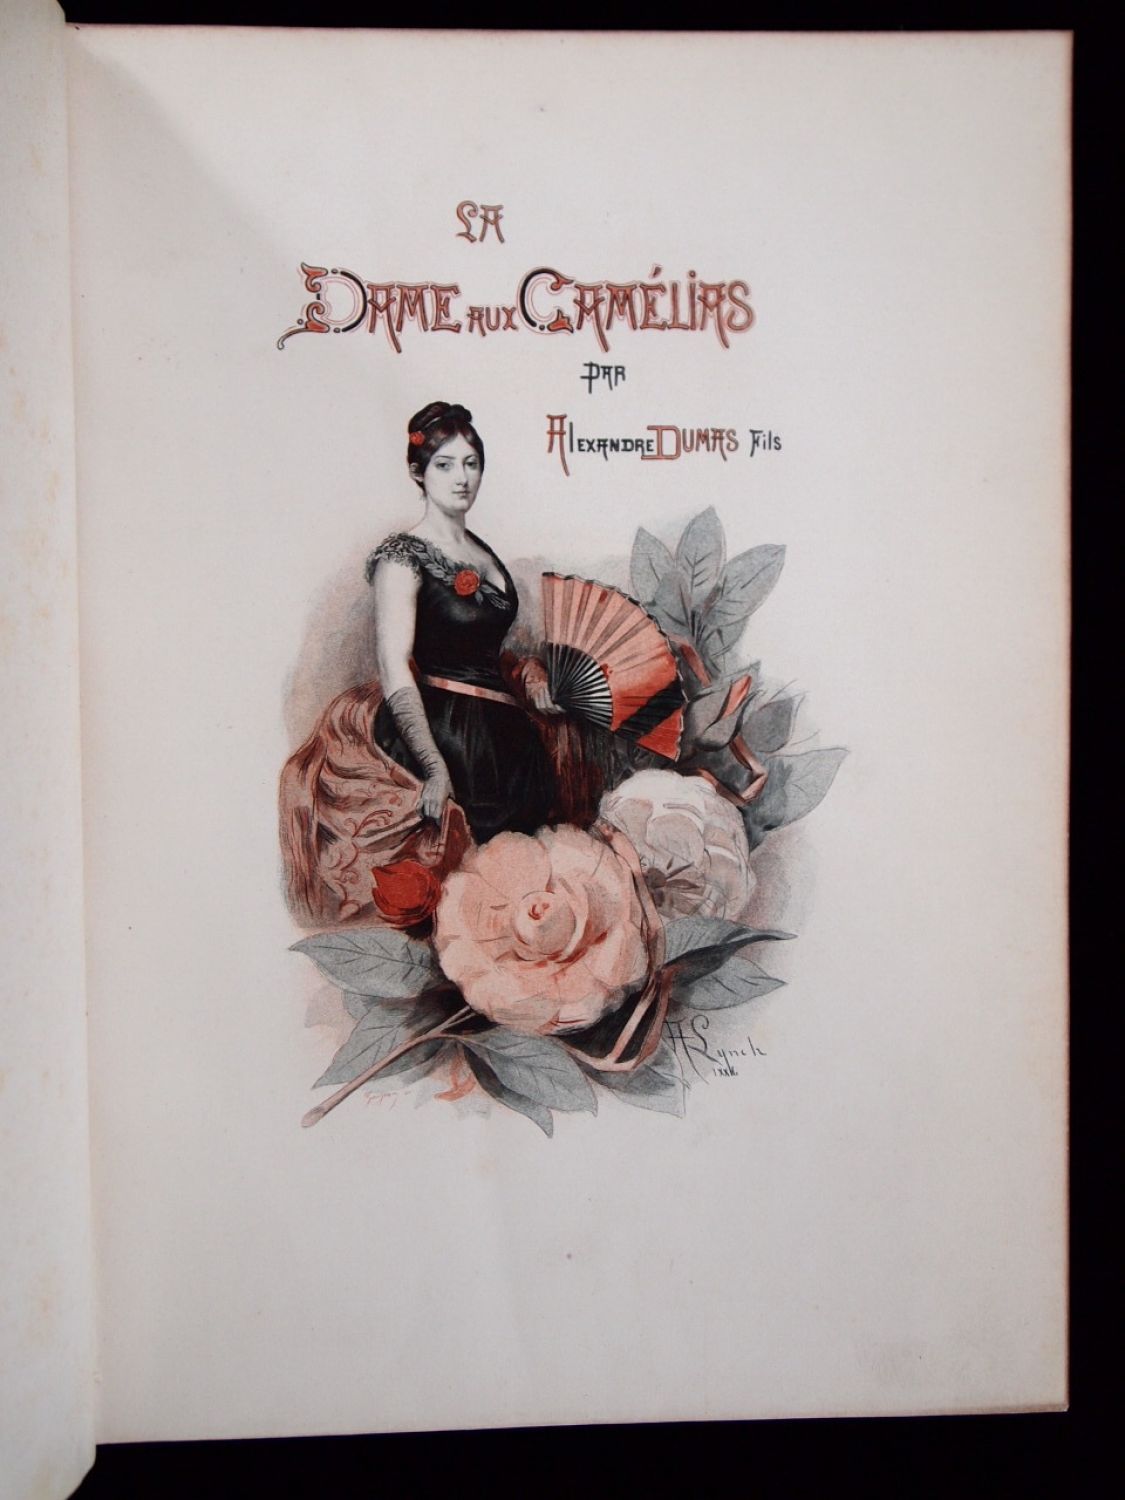 La Dame aux Camélias by Alexandre Dumas fils